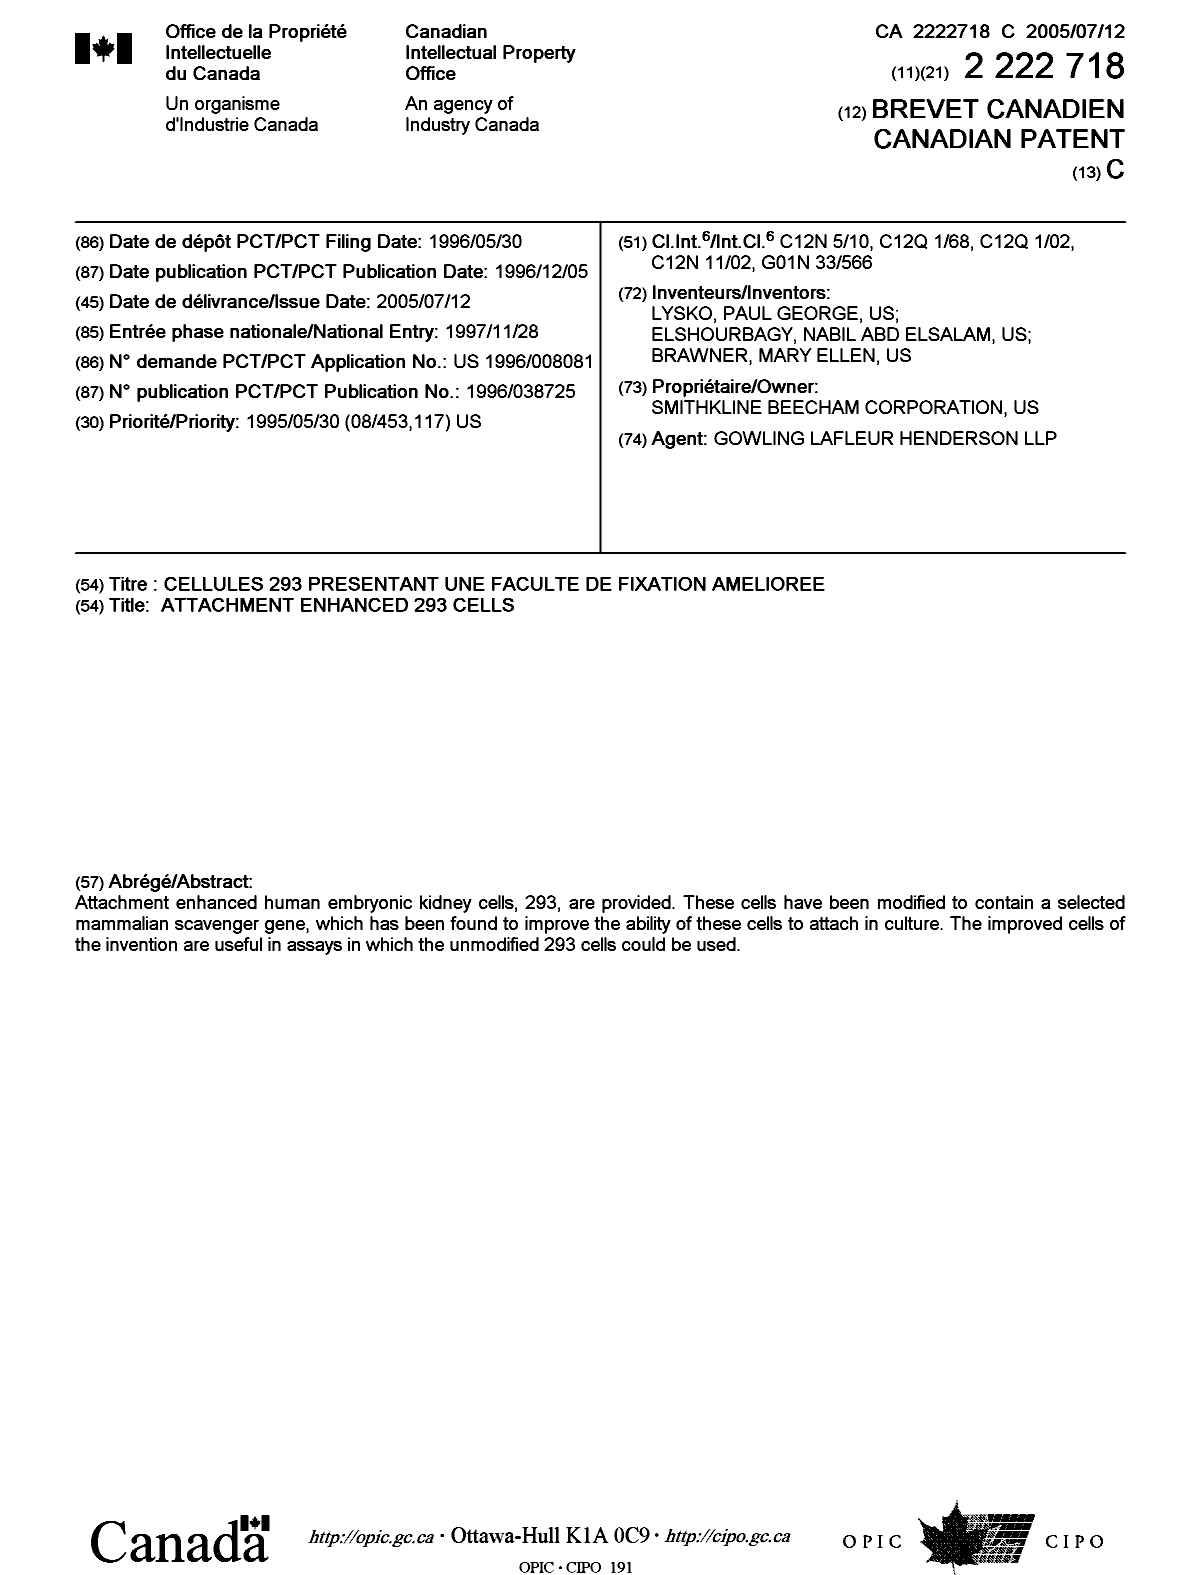 Document de brevet canadien 2222718. Page couverture 20050617. Image 1 de 1